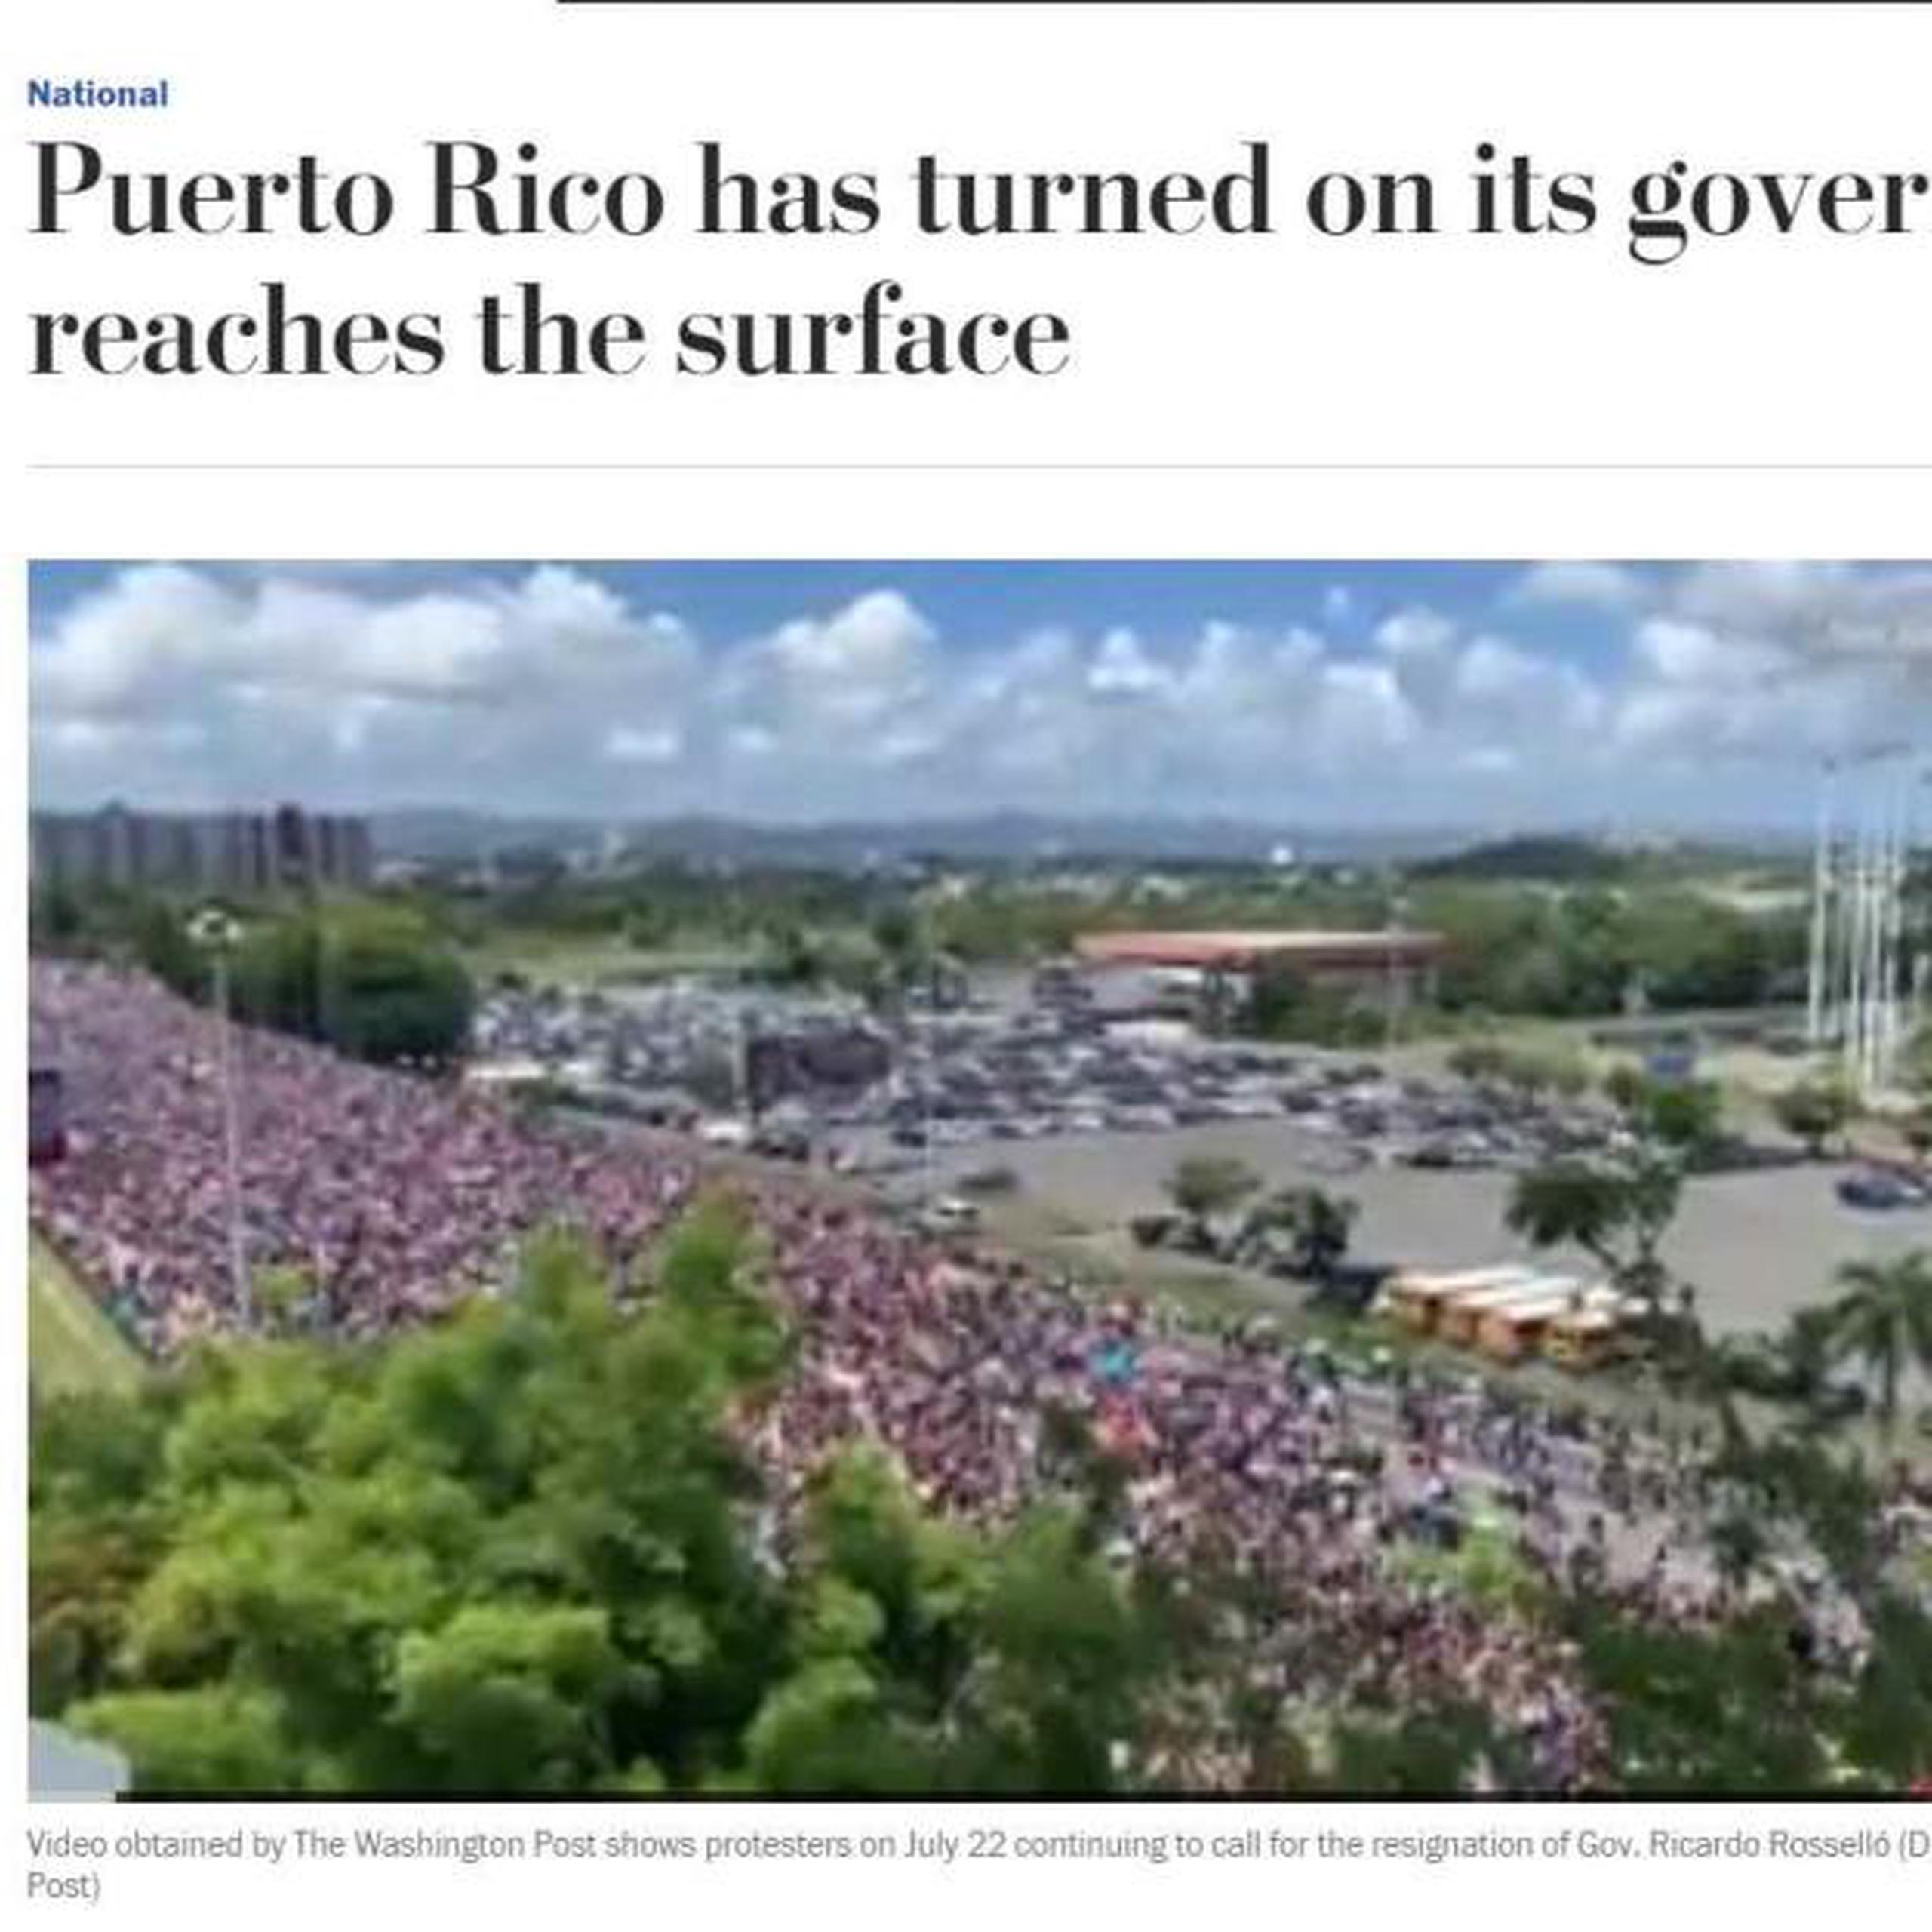 Captura de cobertura del Washington Post sobre la marcha multitudinaria en repudio al gobernador Ricardo Rosselló.